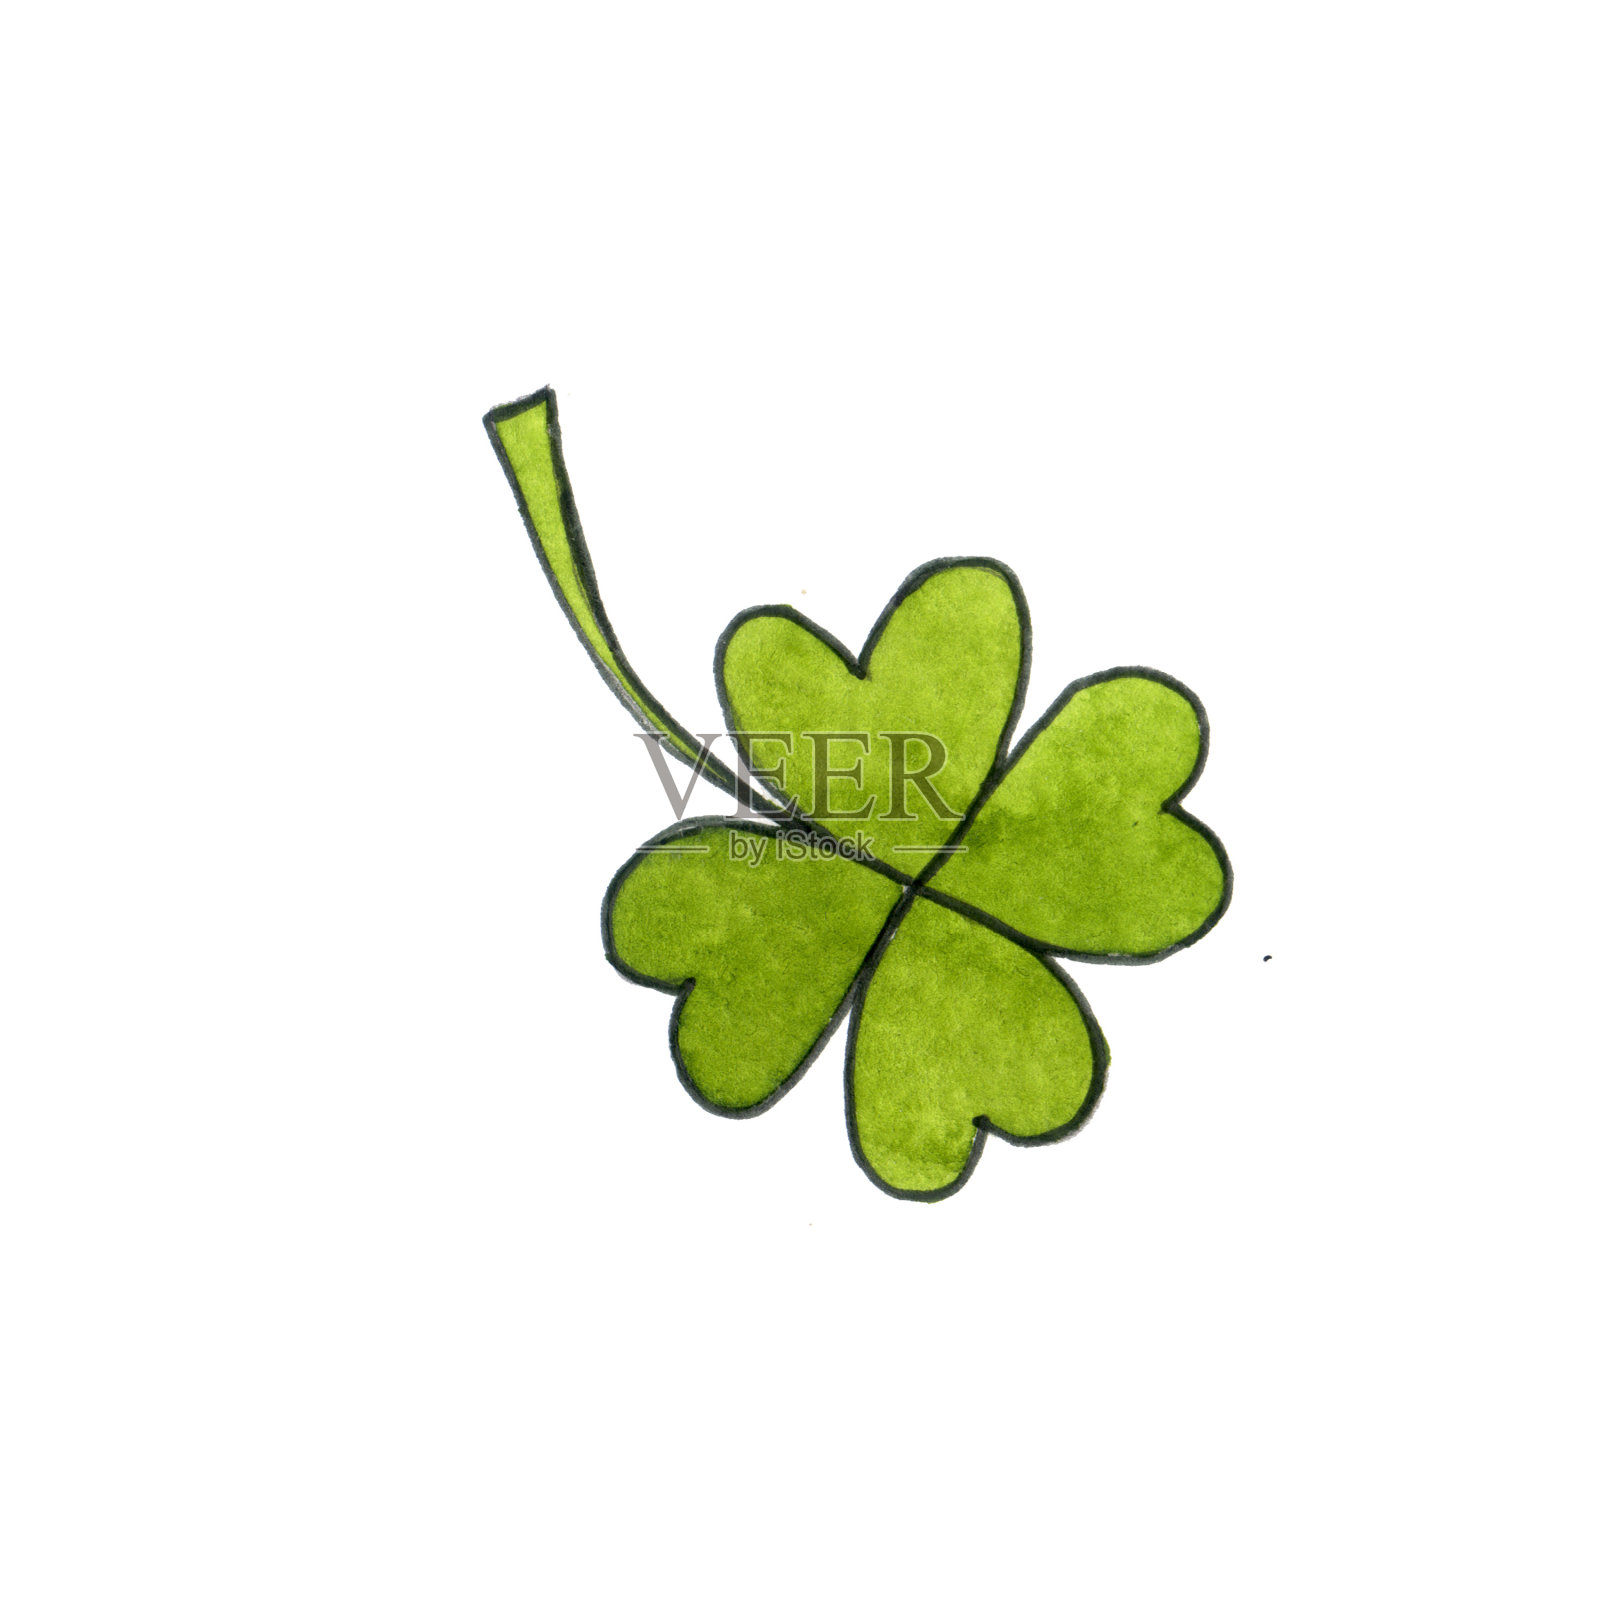 四叶。爱尔兰节日的象征之一是“圣帕特里克节”。设计元素图片